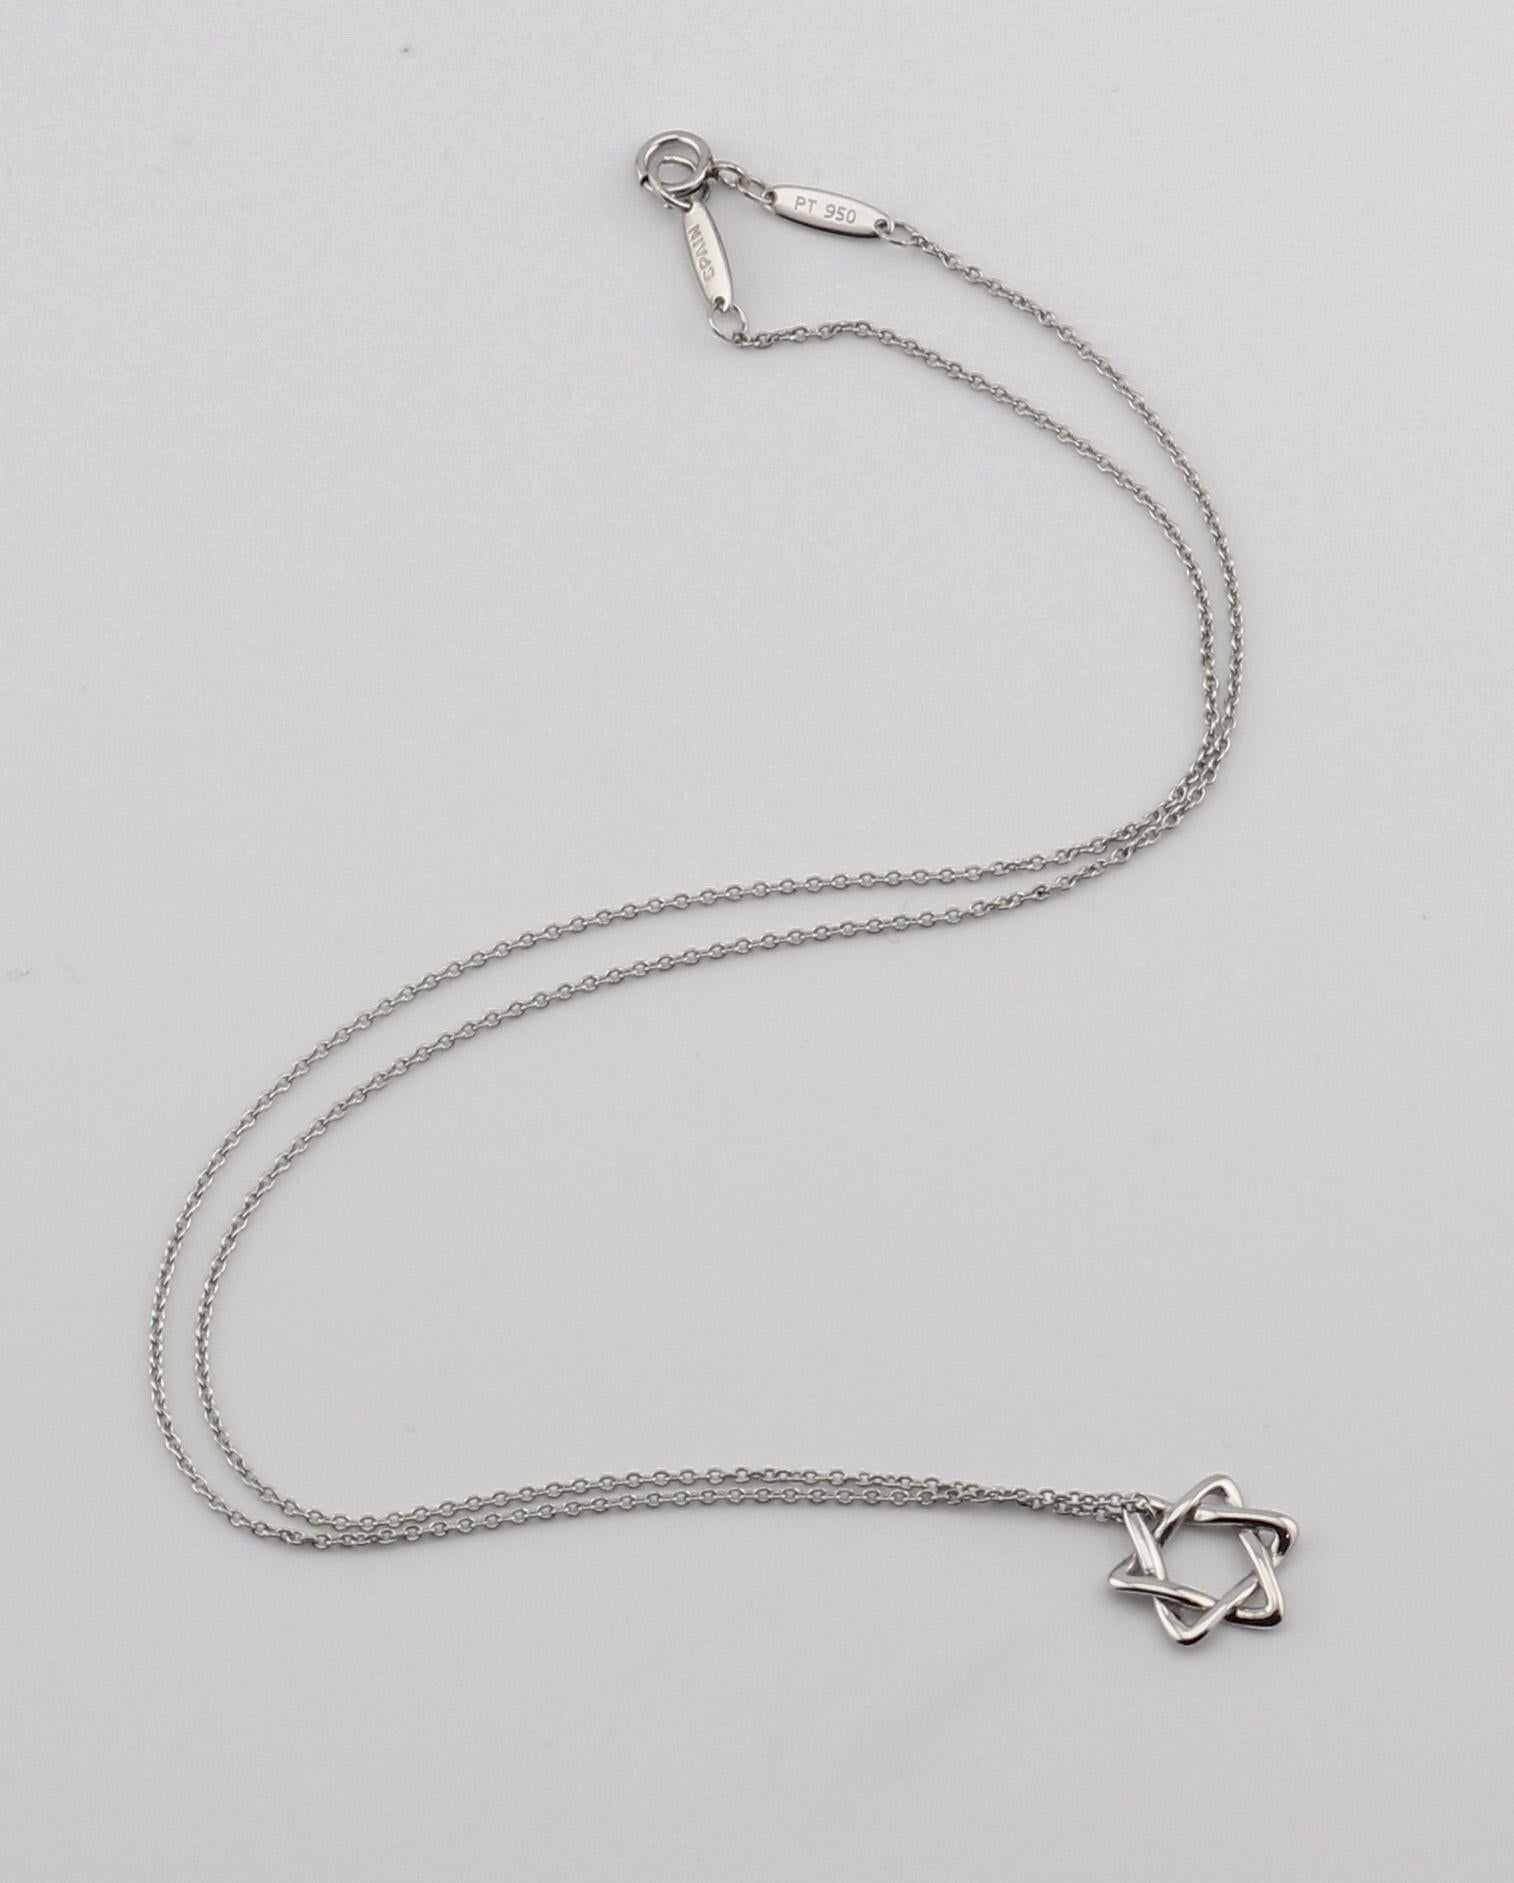 Contemporary Tiffany & Co. Elsa Peretti Star of David Platinum Small (12 mm) Necklace Pendant